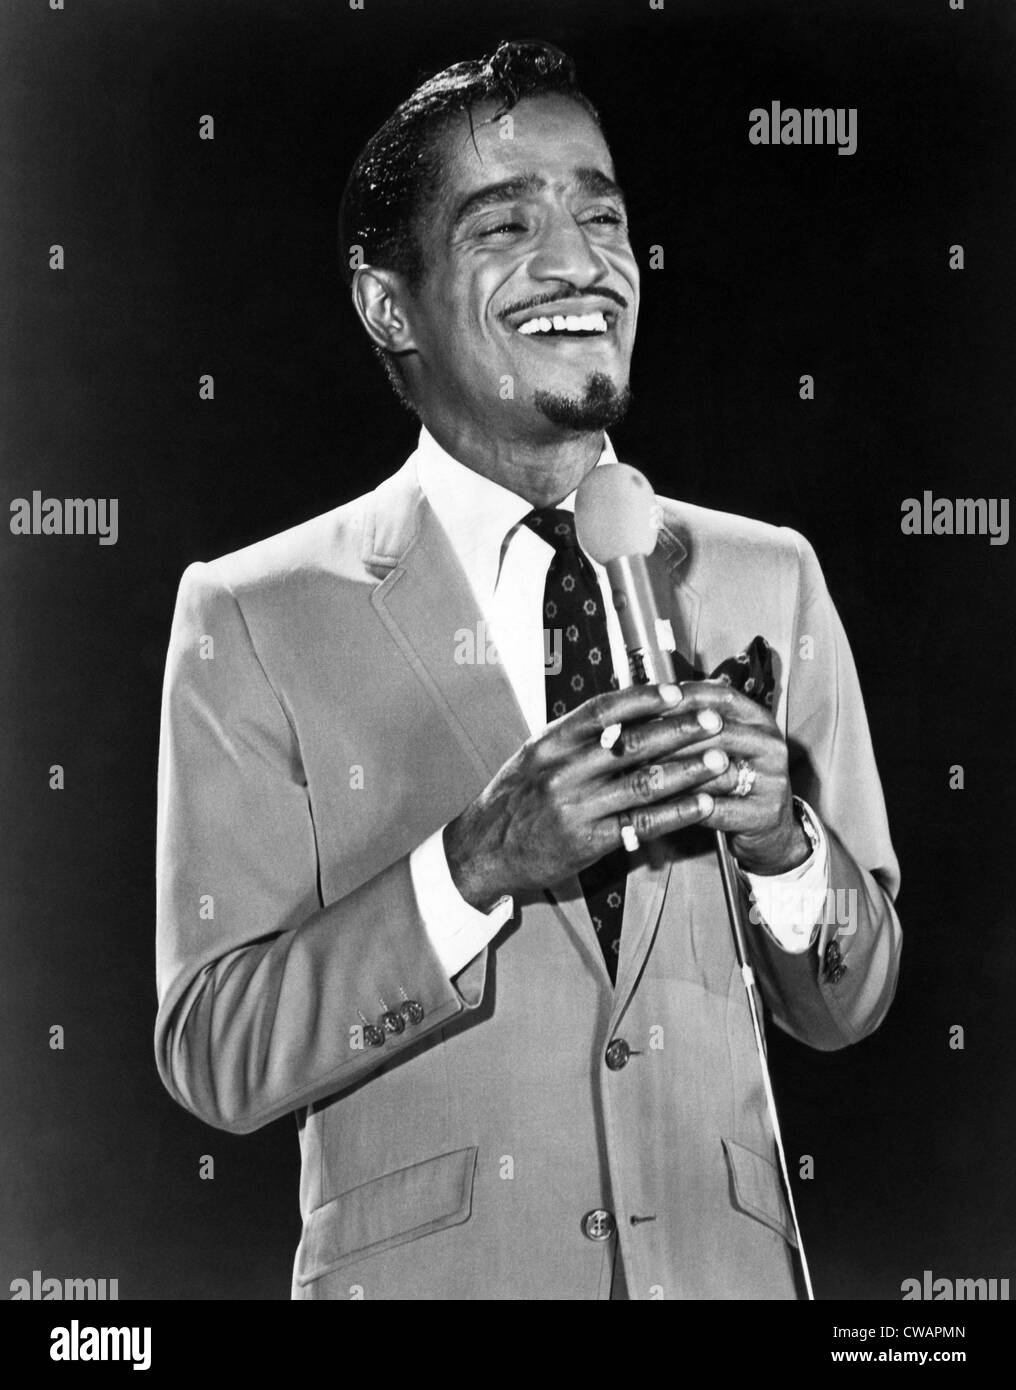 Sammy Davis Jr Ca 1960er Jahre Hoflichkeit Csu Archive Everett Collection Stockfotografie Alamy